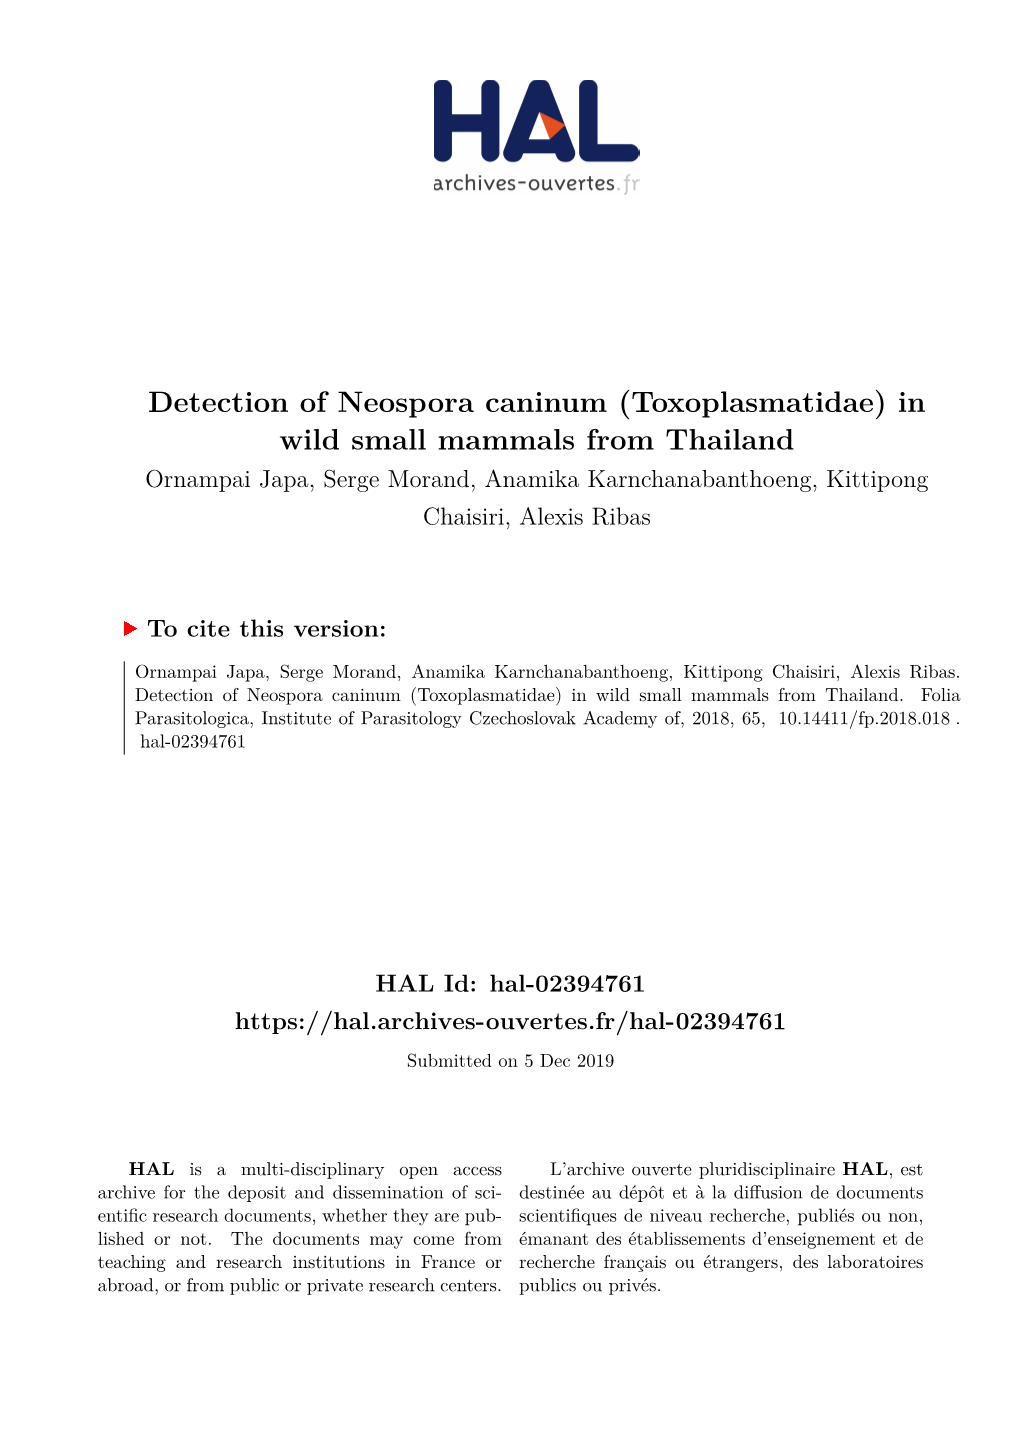 Detection of Neospora Caninum (Toxoplasmatidae) in Wild Small